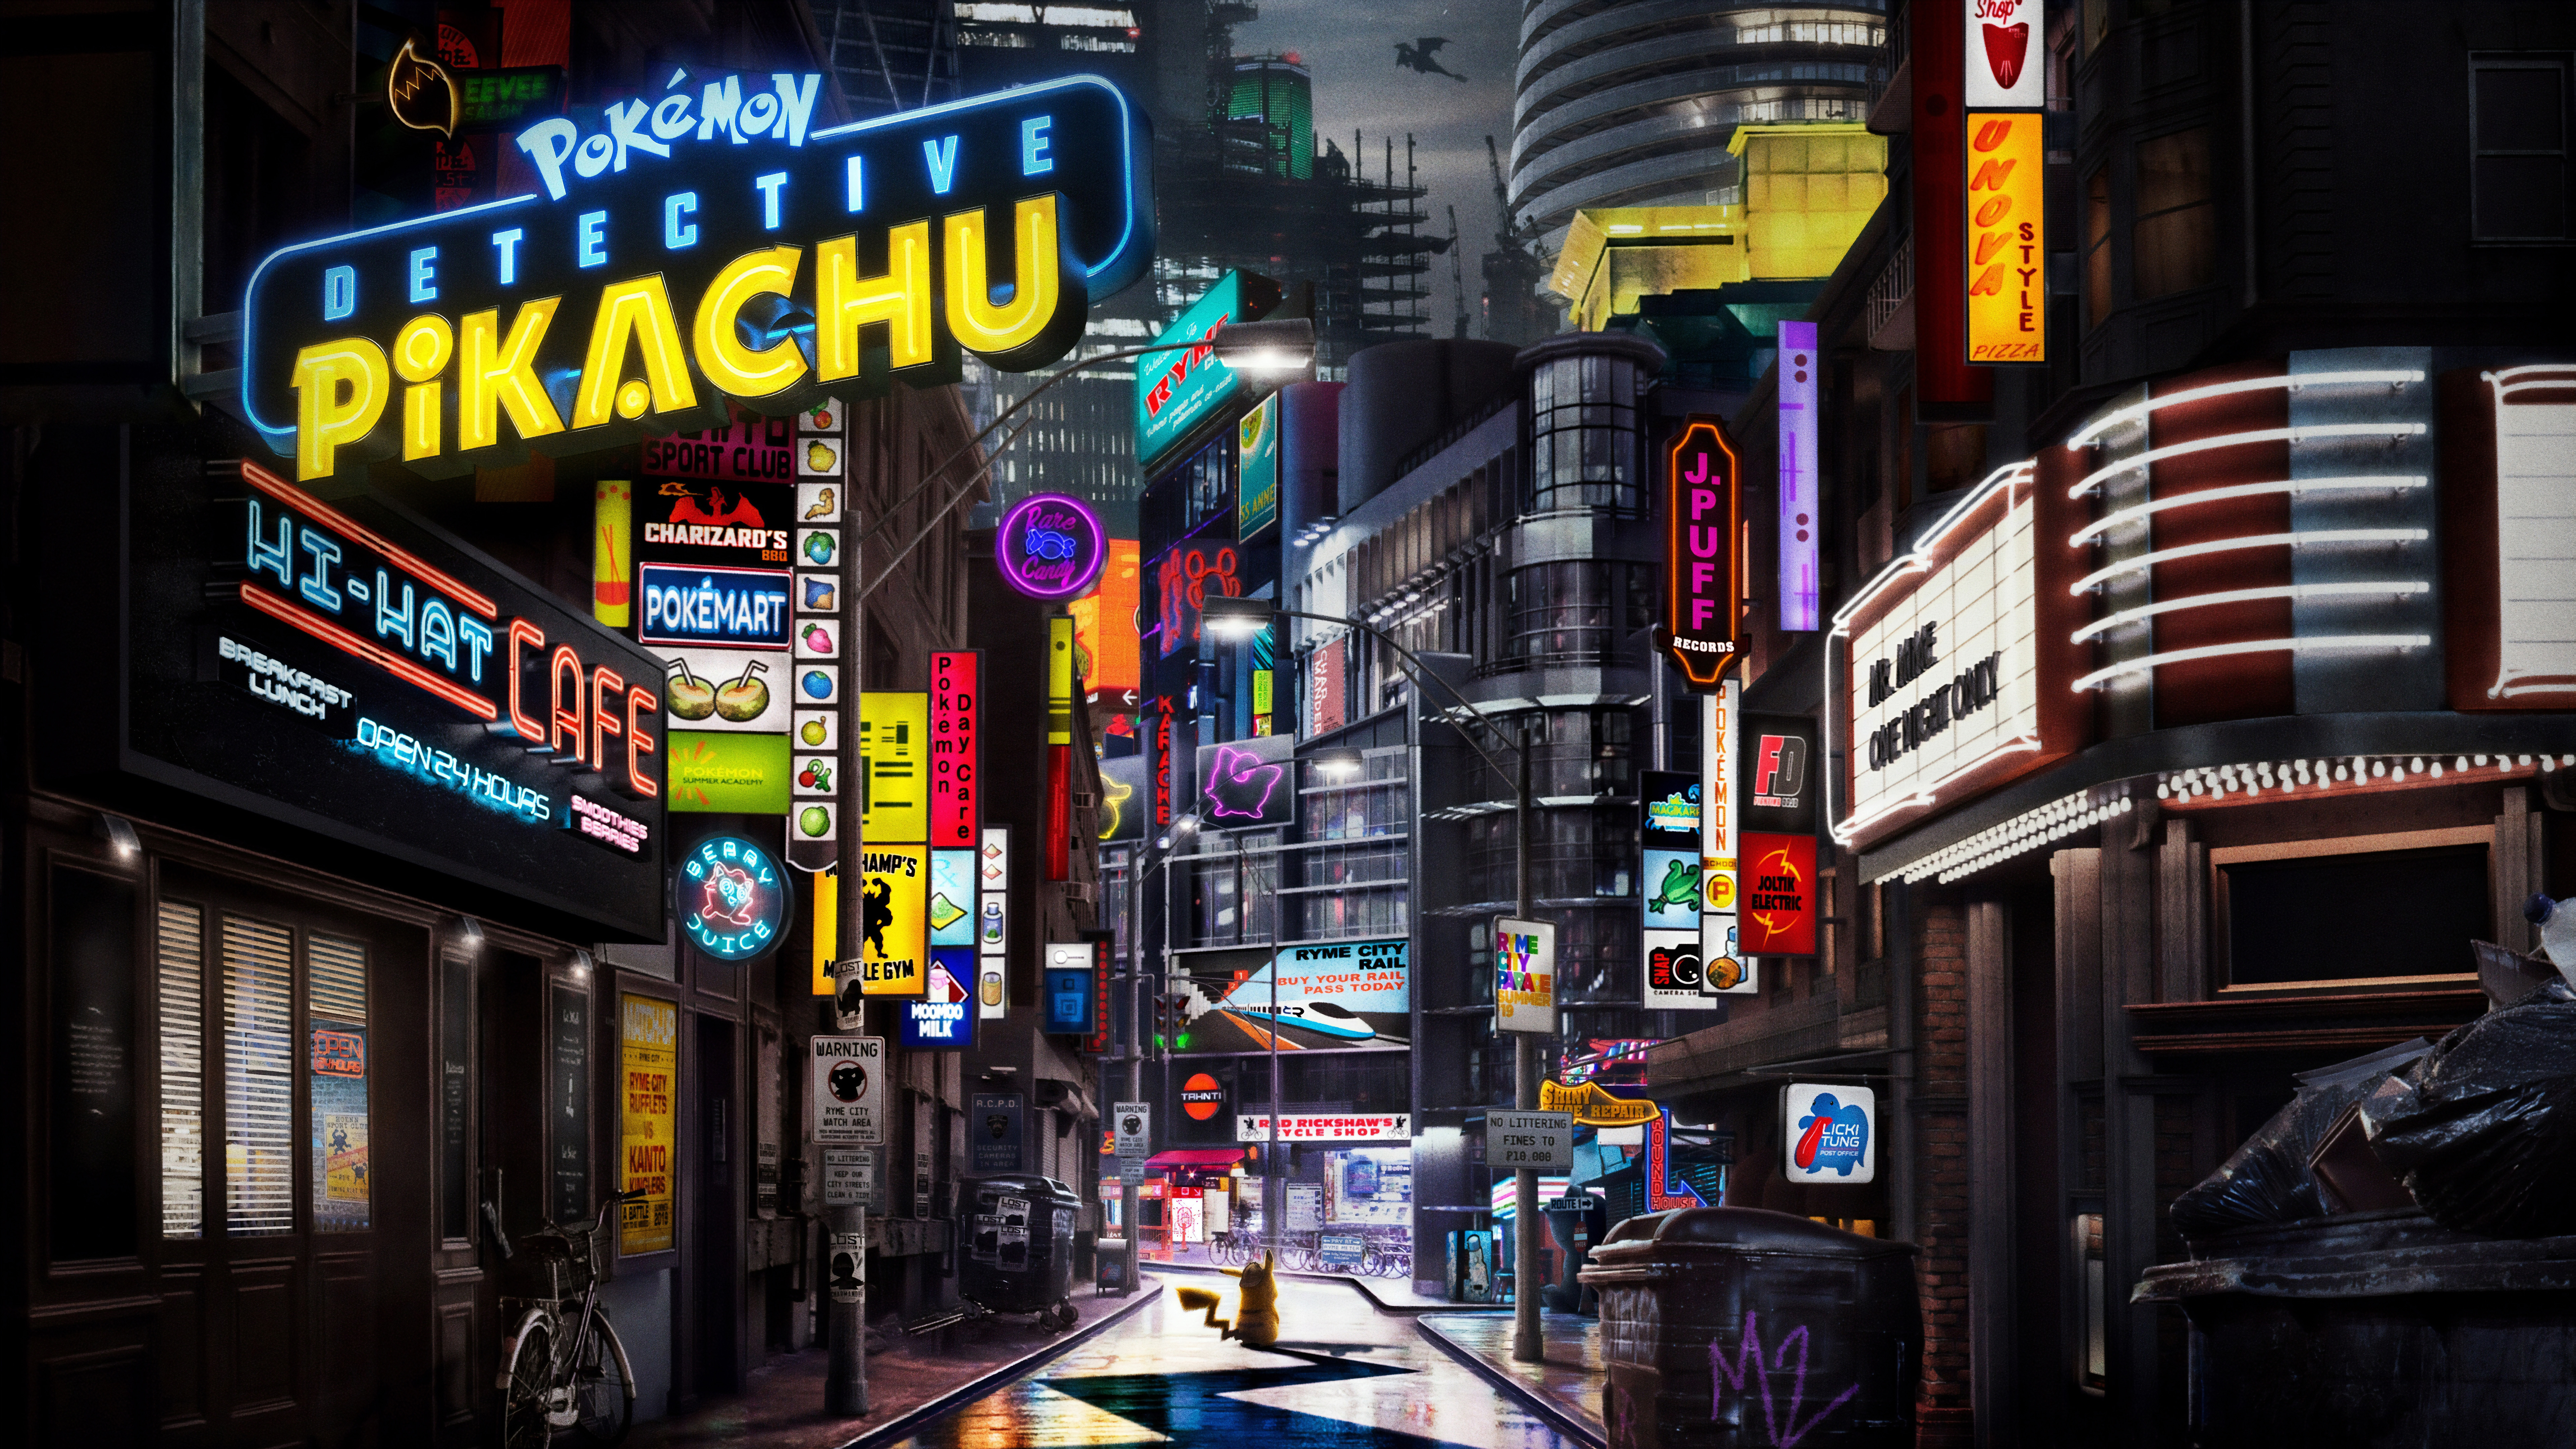 Pok Mon Detective Pikachu 8k Ultra HD Wallpaper Background Image